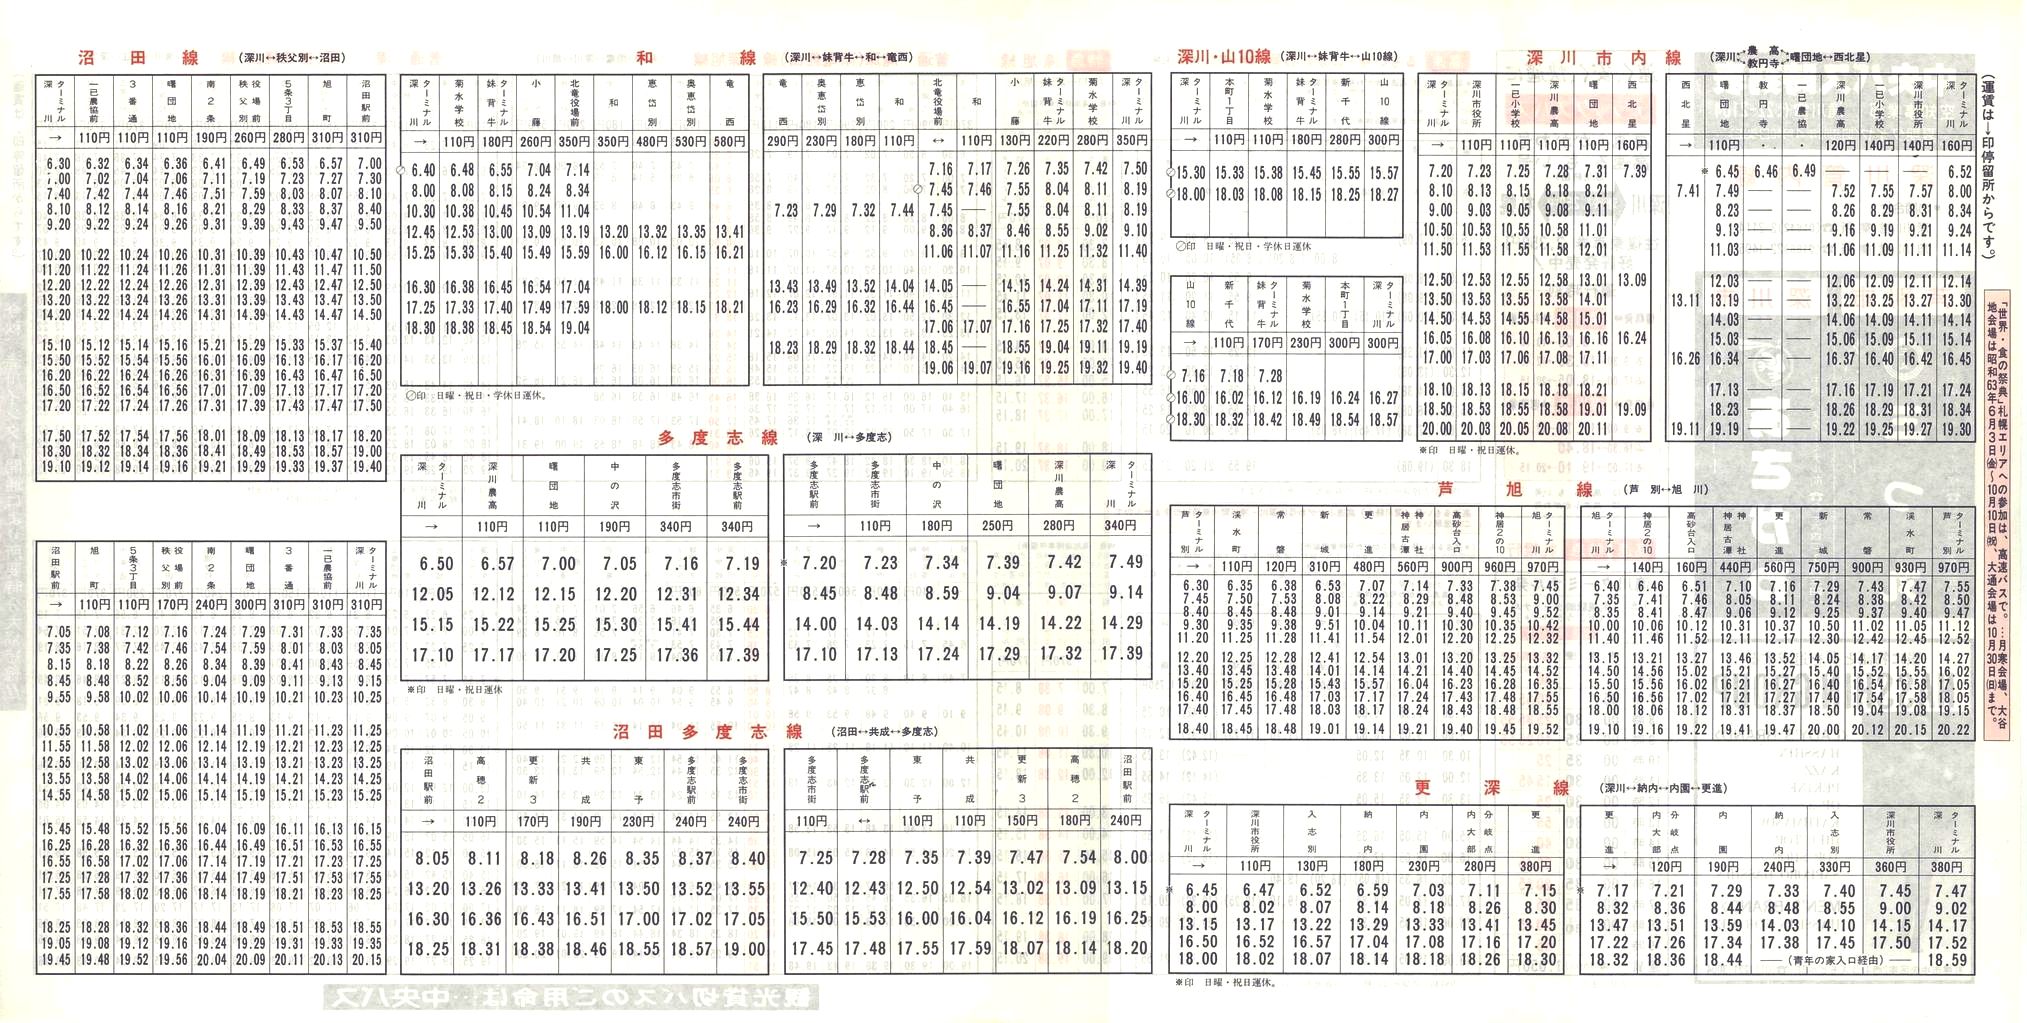 1988-04-10改正_北海道中央バス(空知)_深川管内線時刻表裏面